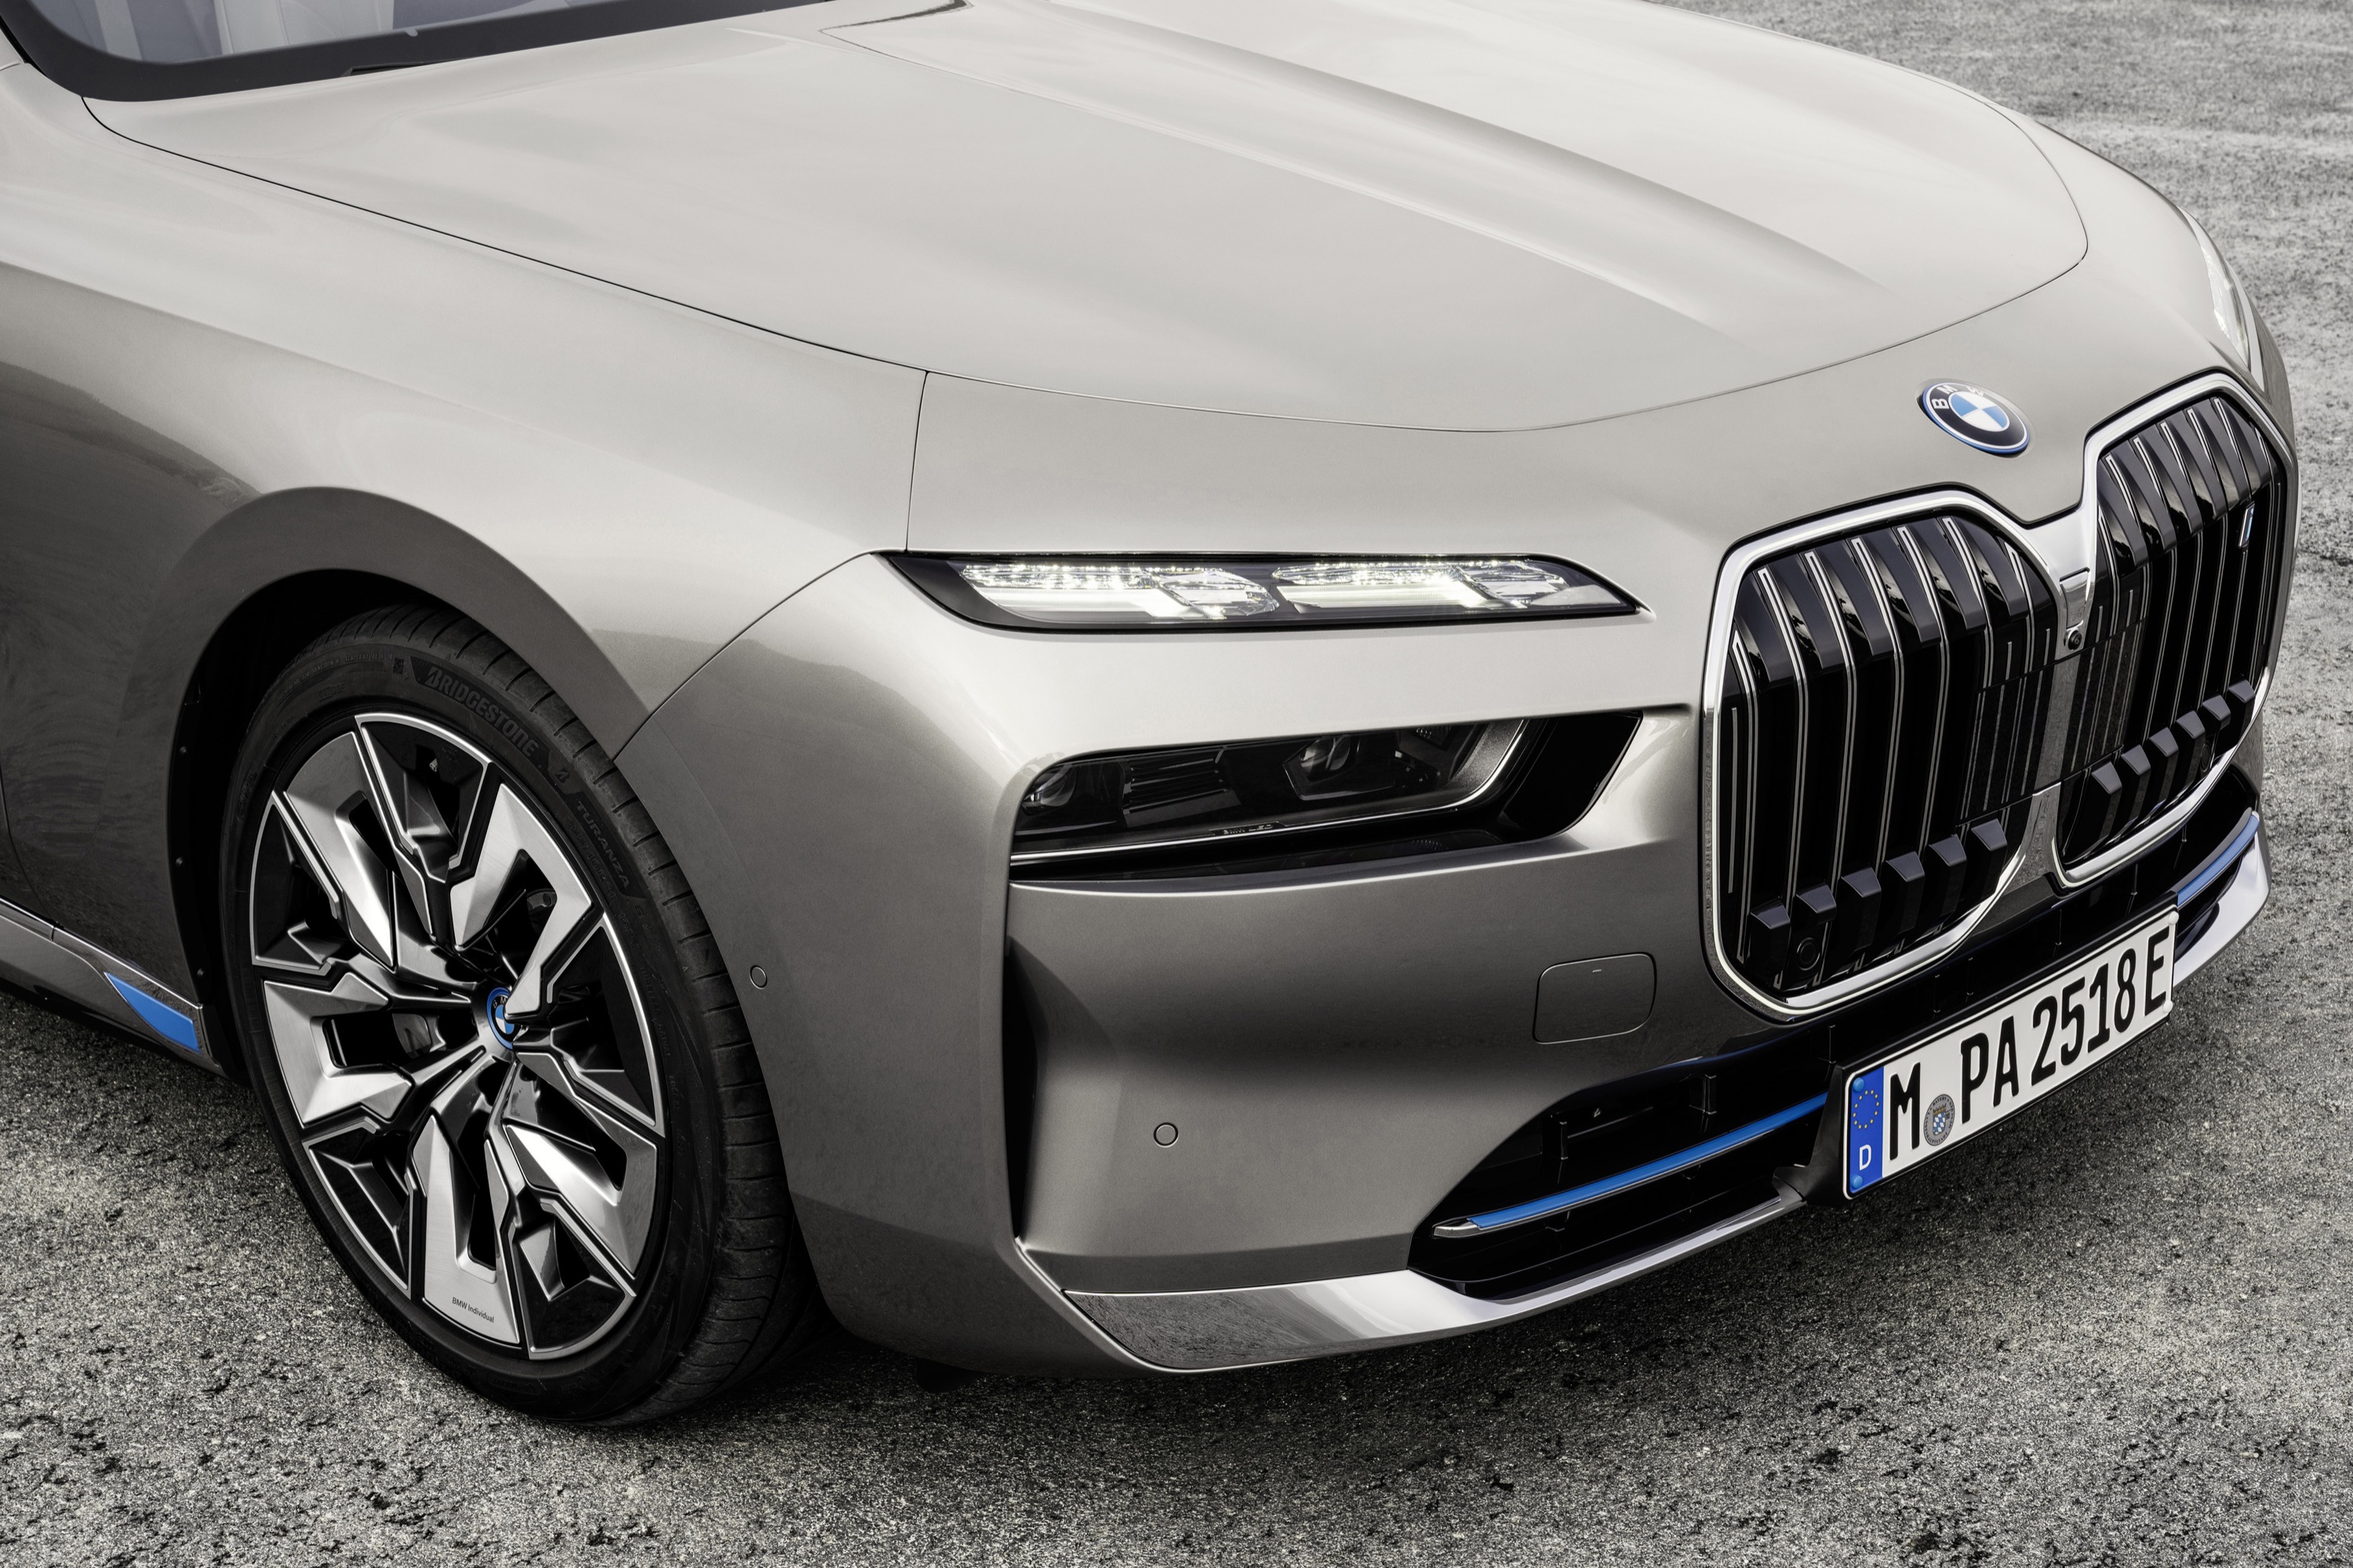 BMW thử nghiệm xe hơi gắn 3 động cơ điện có công suất lên đến 720 mã lực